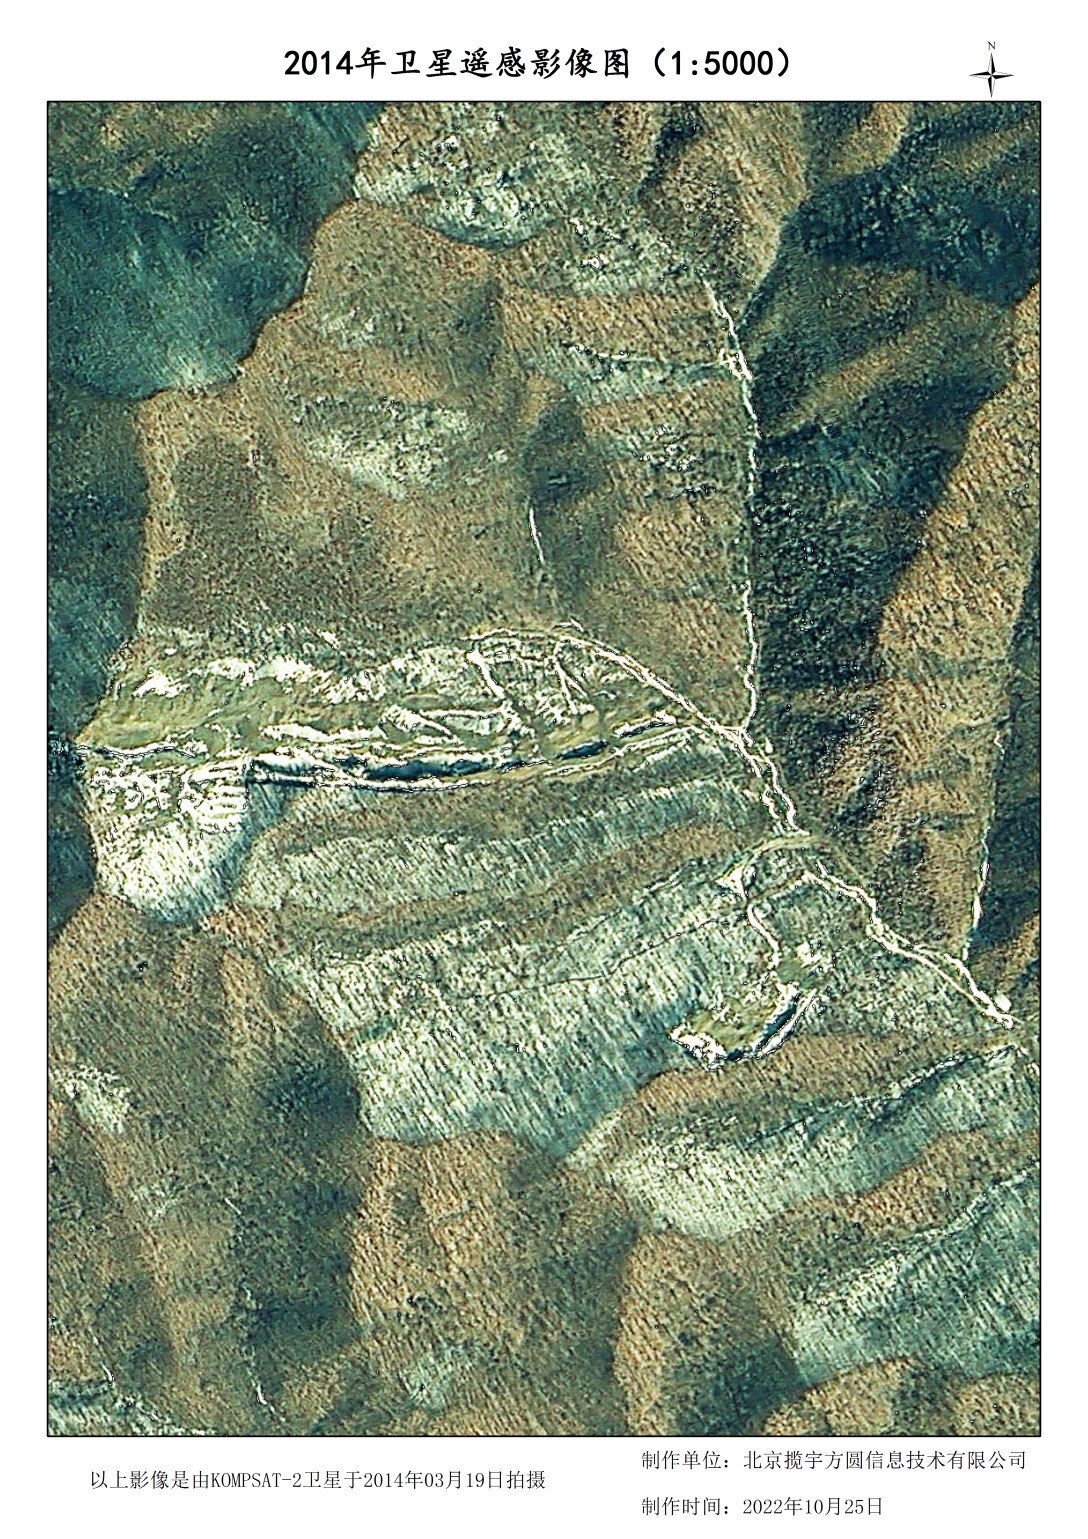 1米韩国卫星山林地貌破坏影像样例